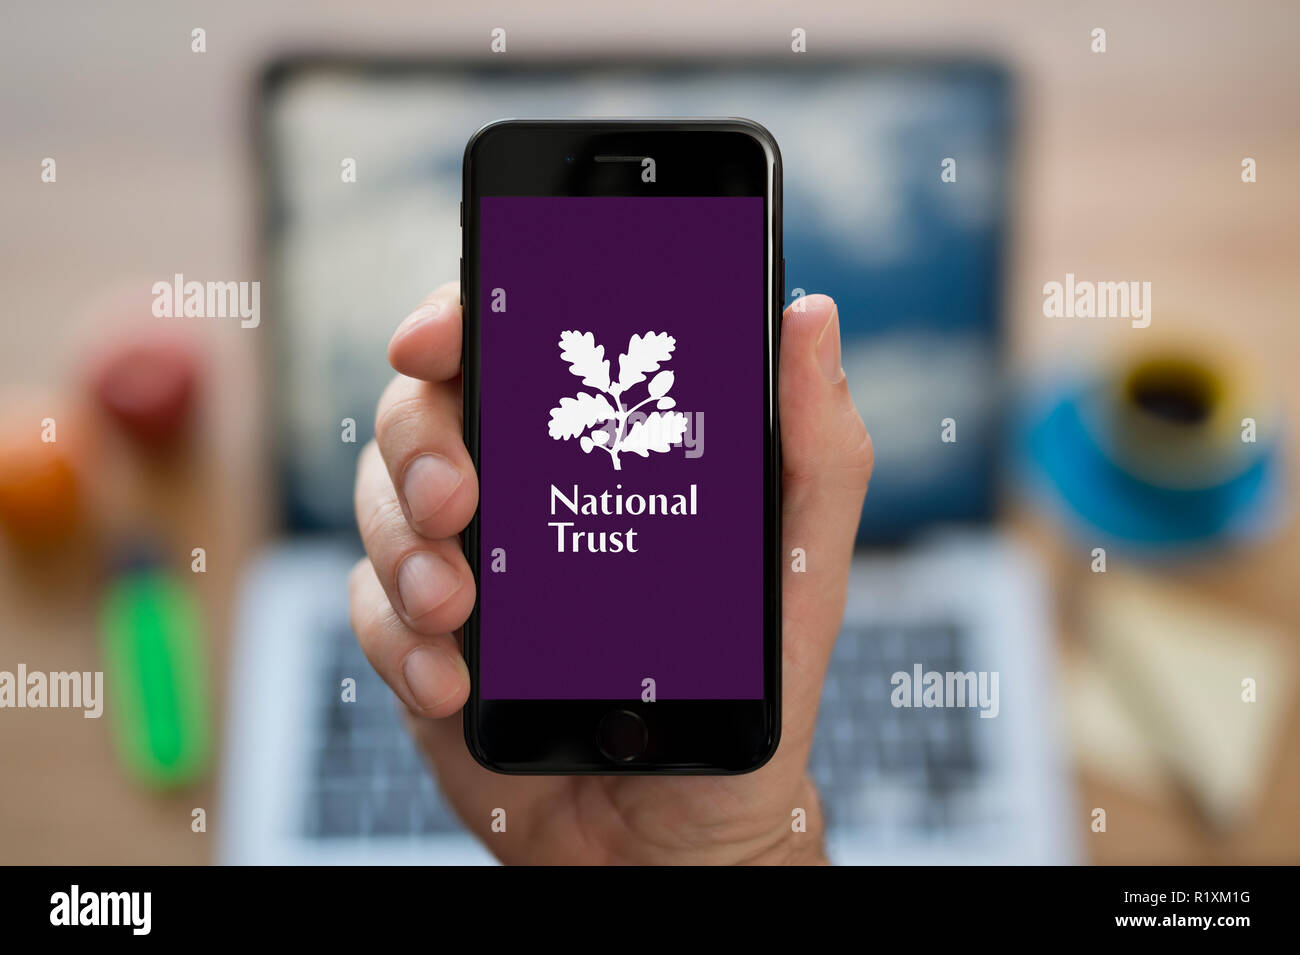 Un uomo guarda al suo iPhone che visualizza il National Trust logo, mentre se ne sta seduto alla sua scrivania per computer (solo uso editoriale). Foto Stock